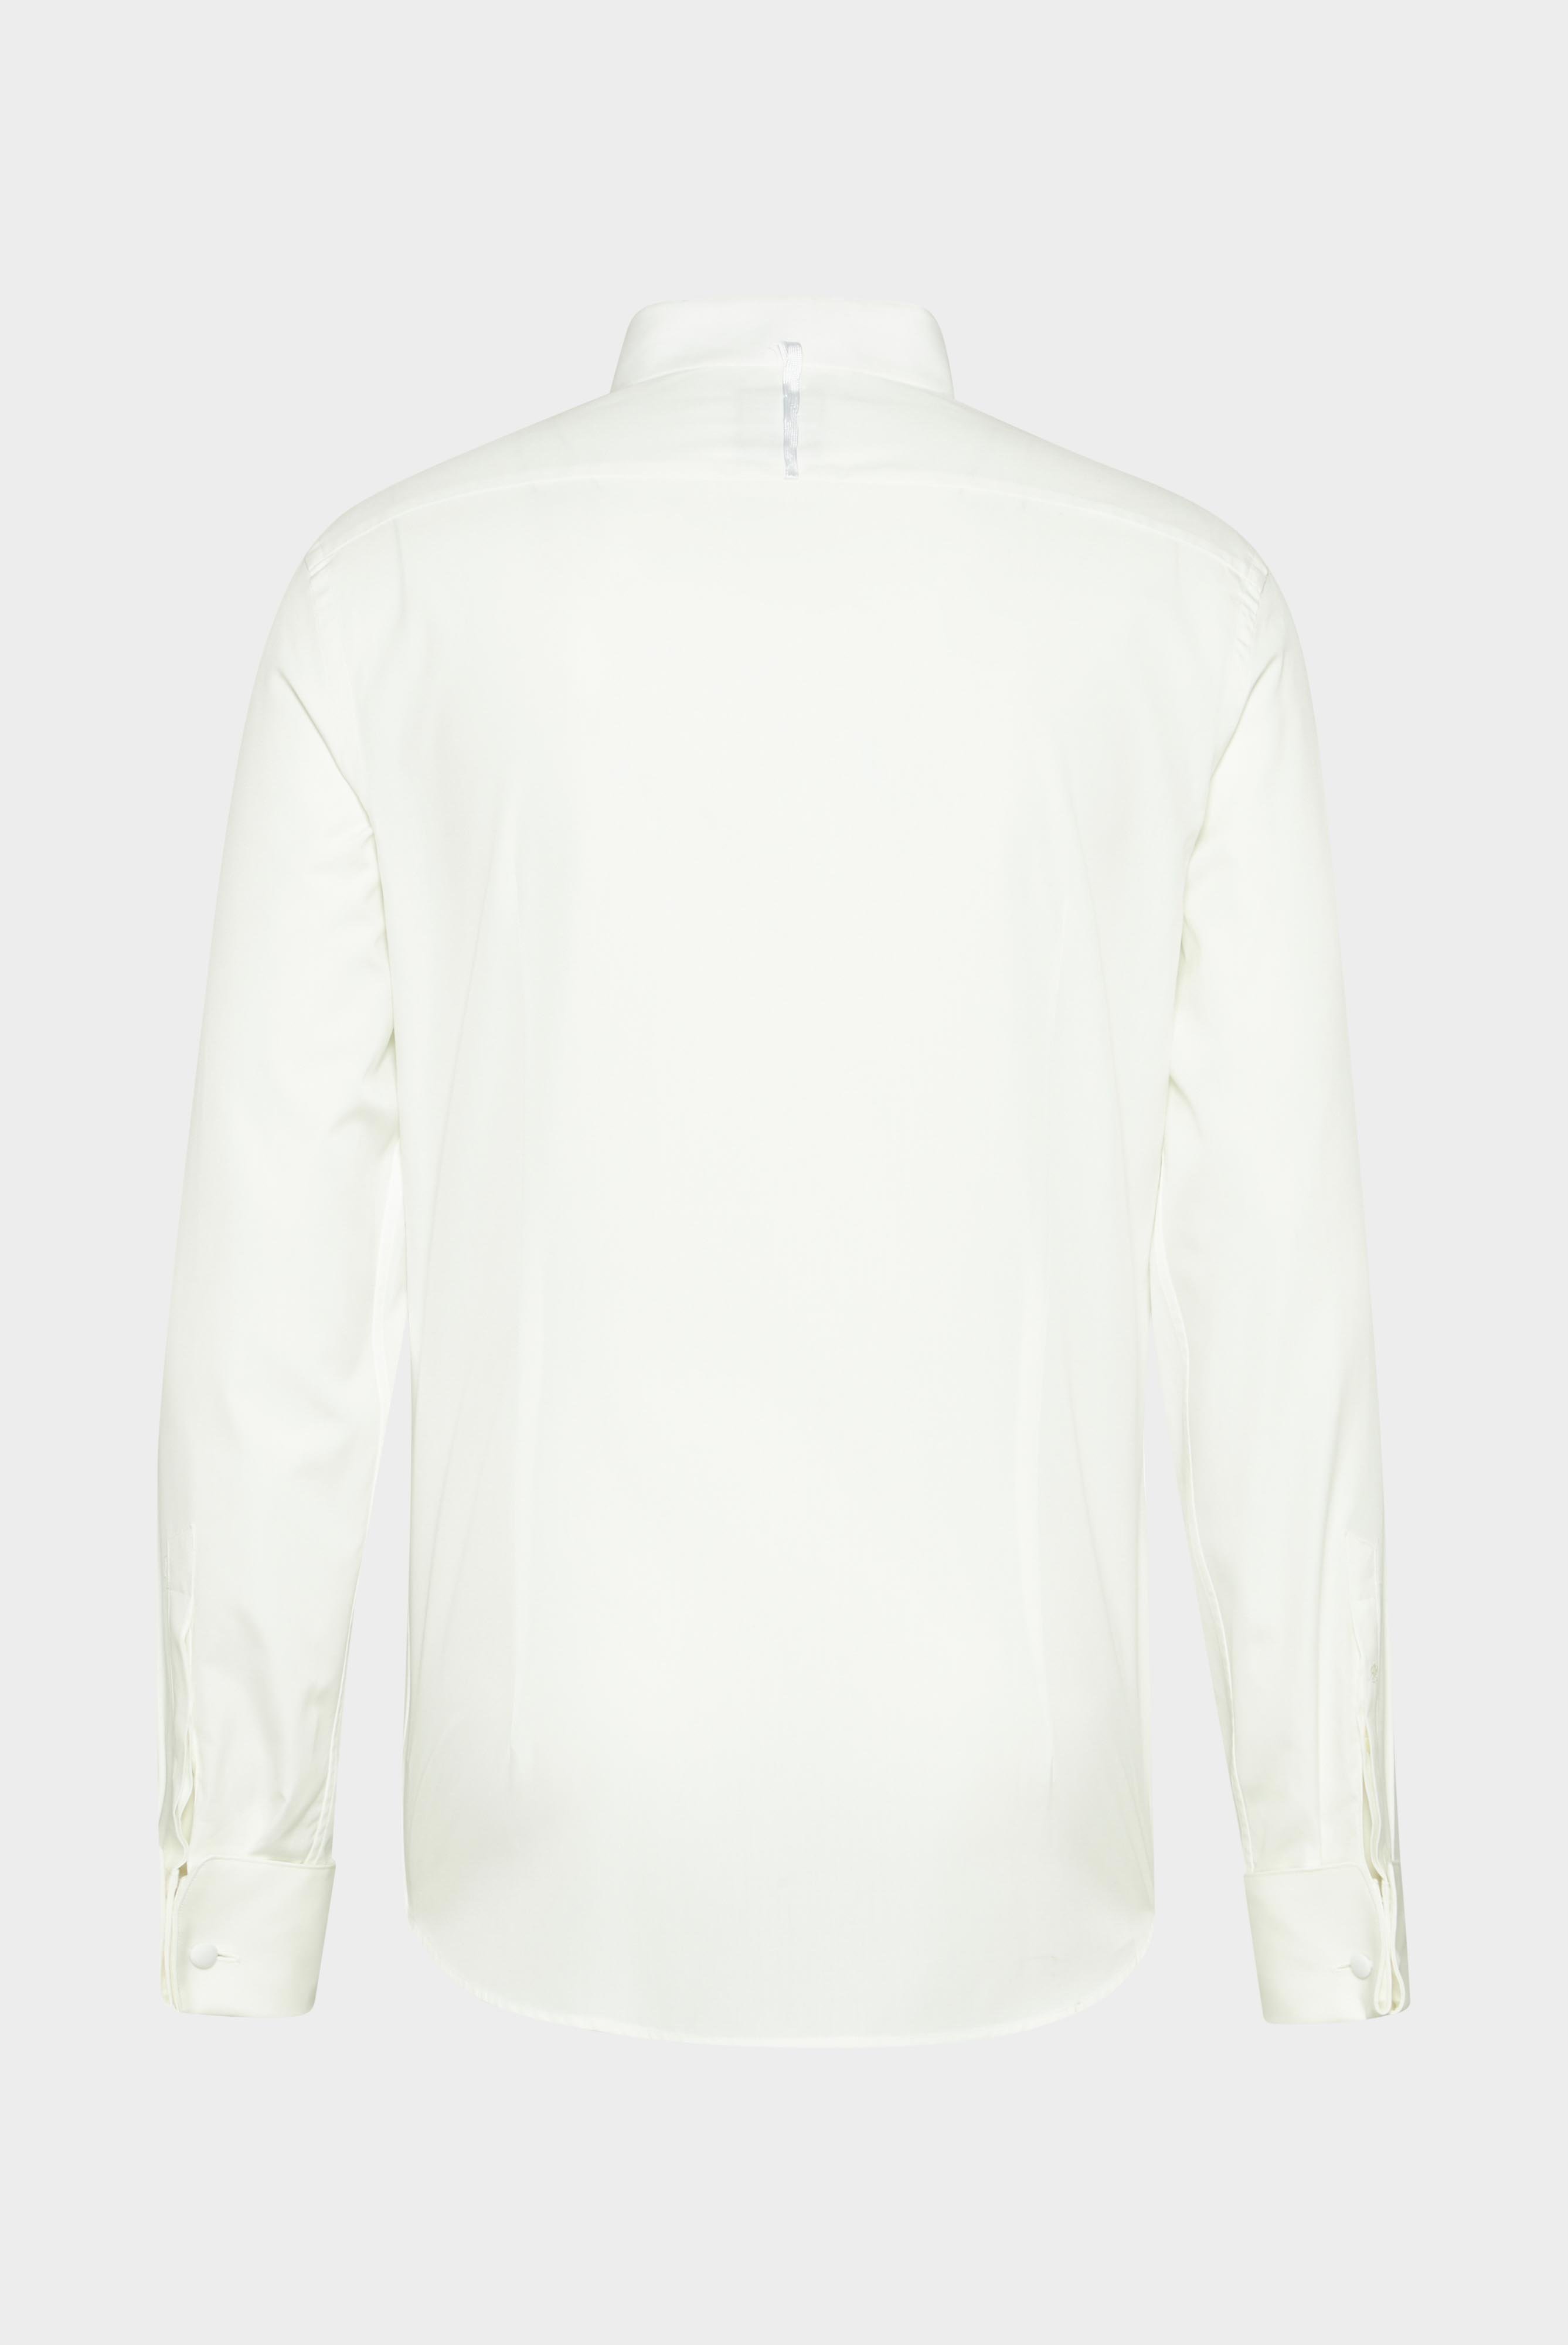 Festliche Hemden+Smokinghemd mit Kläppchenkragen Slim Fit+20.2061.NV.130657.100.37